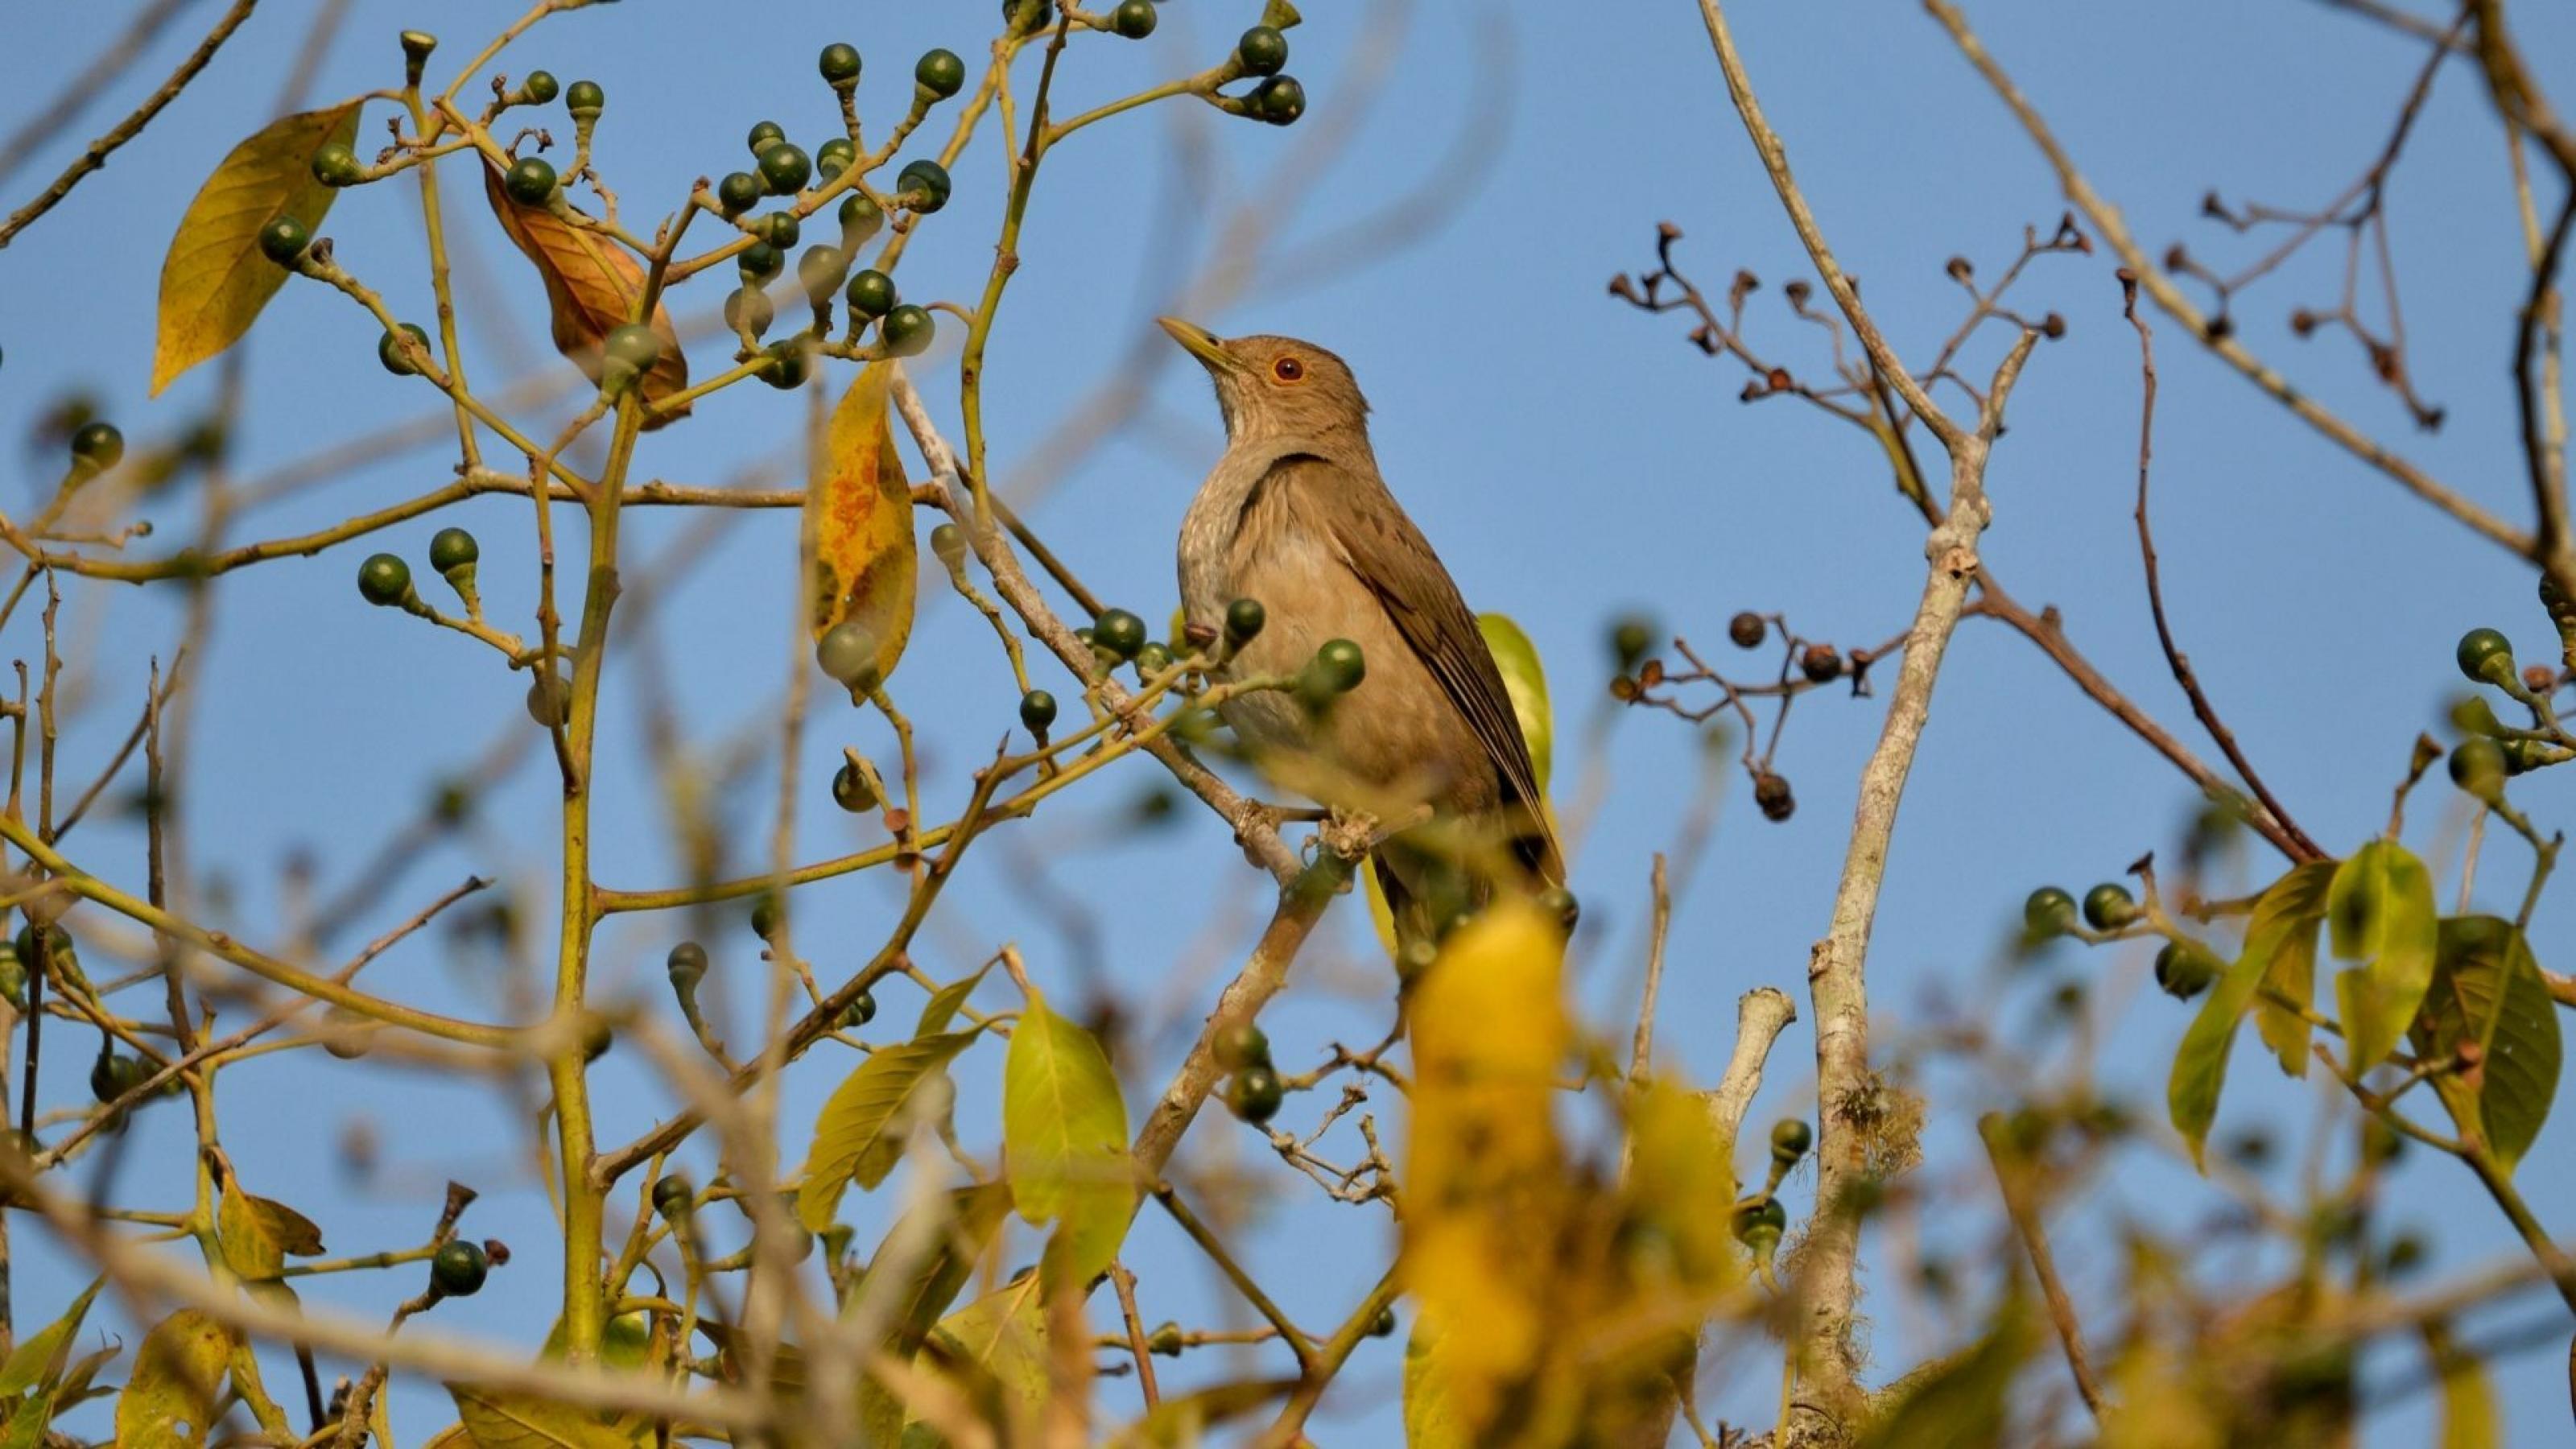 Ein brauner Vogel mit karamellfarbener Bauchseite mit weißen Sprengeln sitzt in einem Baum. Dieser trägt kaum Blätter, aber grüne Beeren.